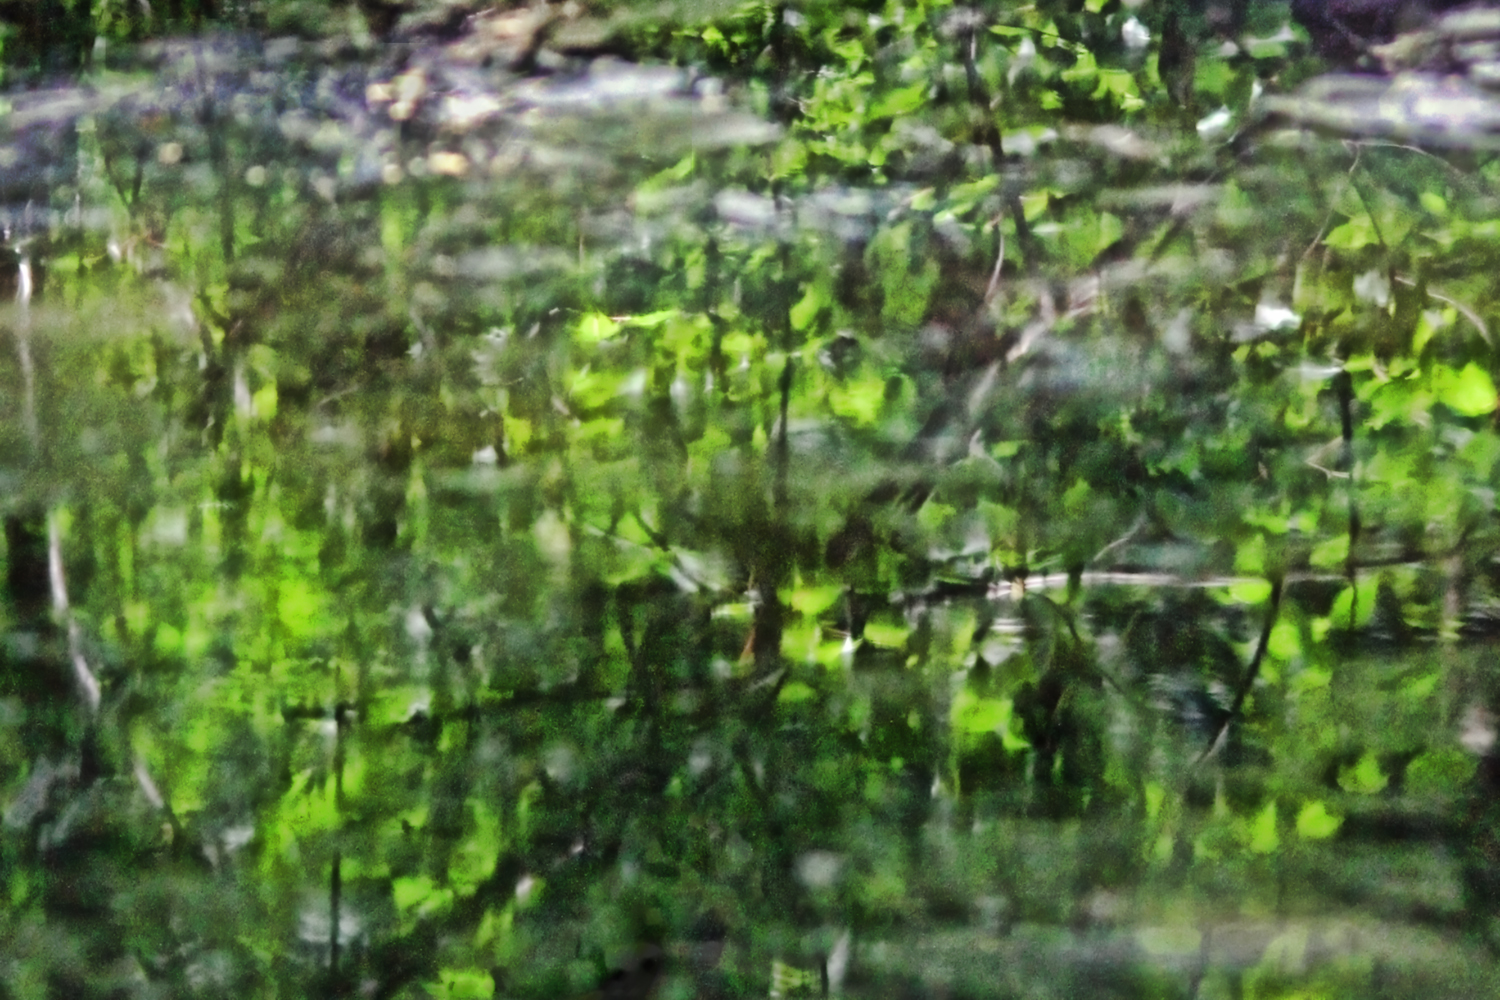 Azalea pond, summer